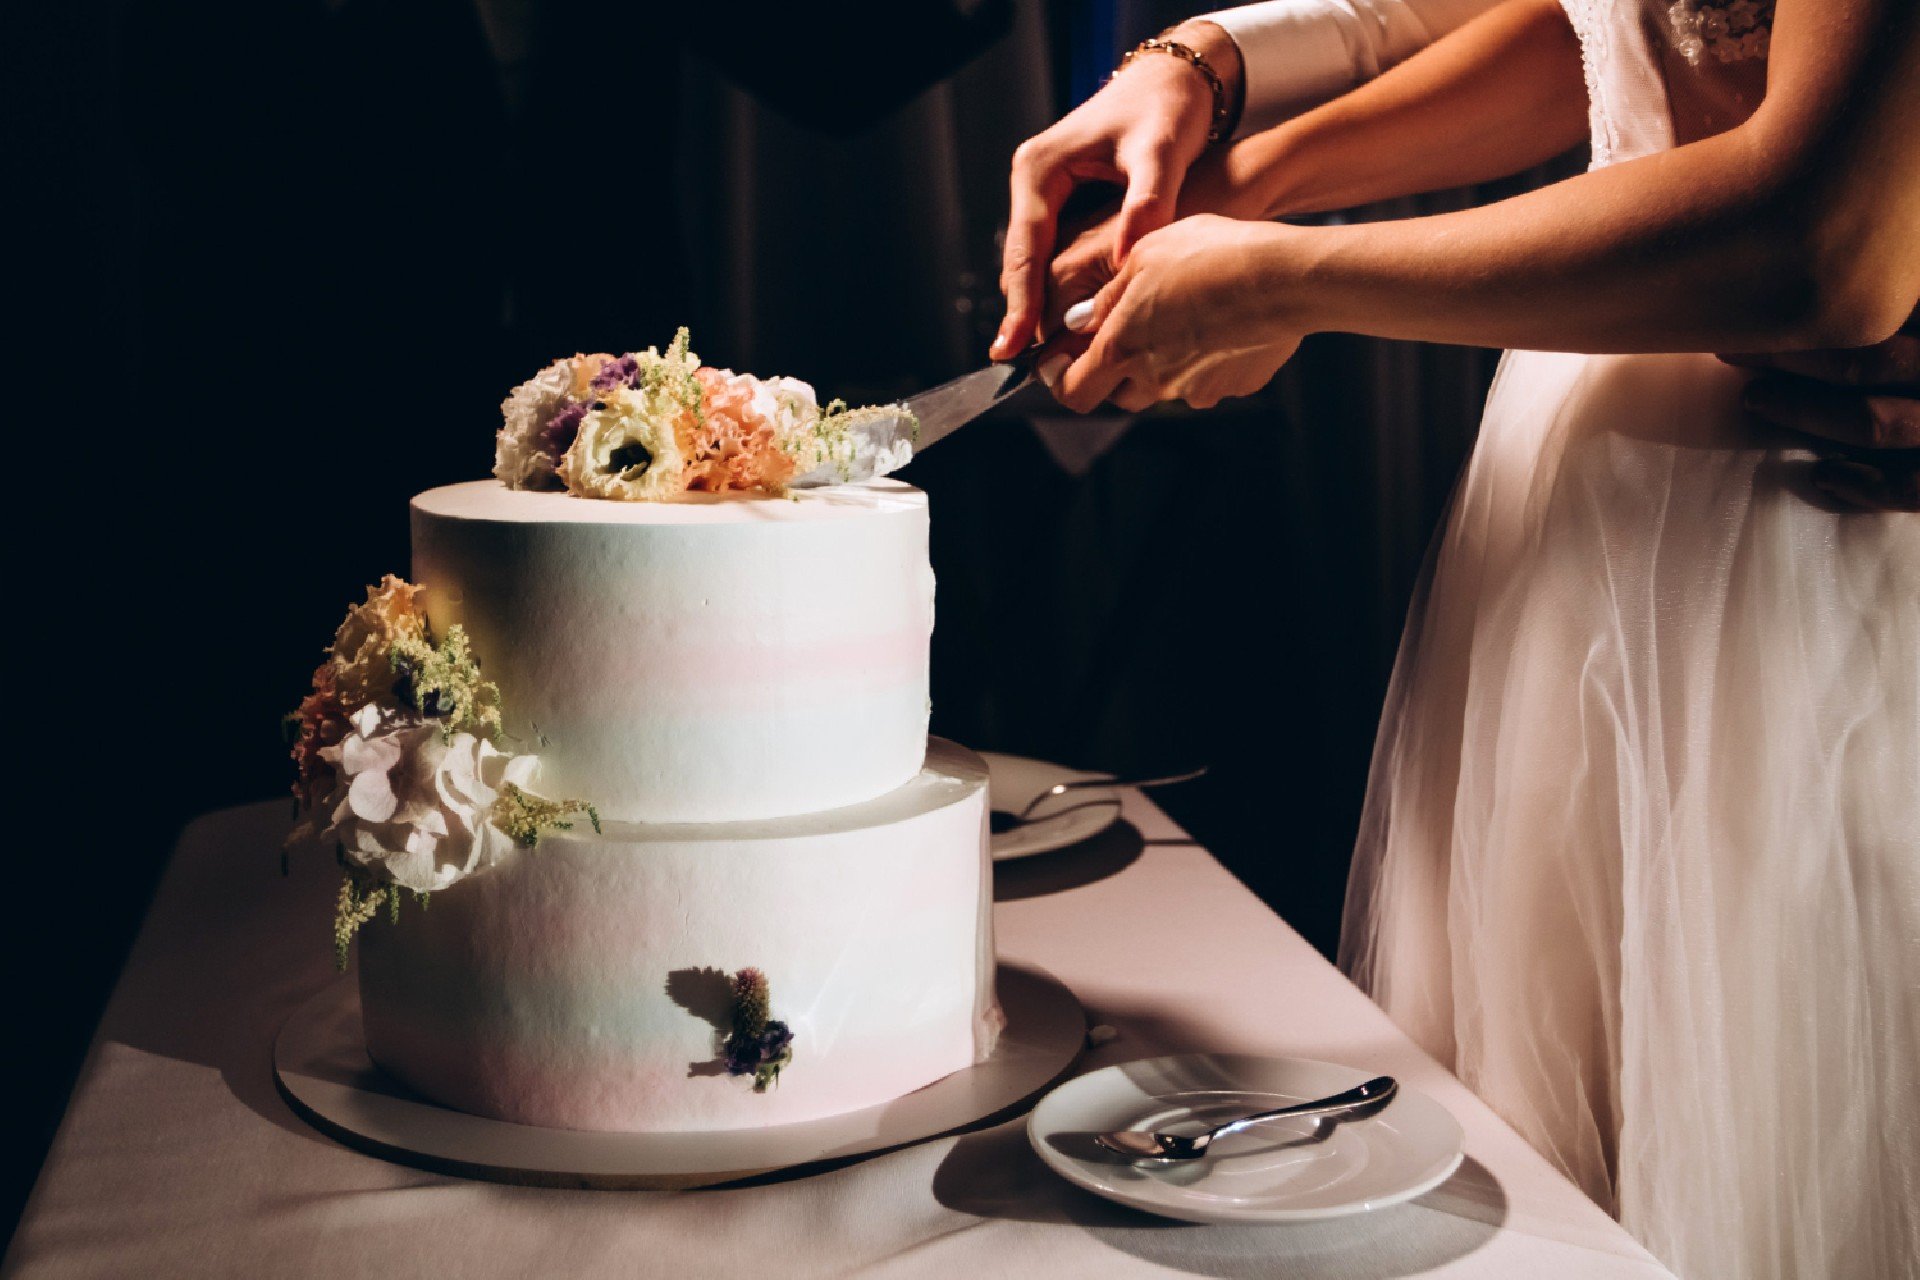 Quand coupe-t-on le gâteau lors d’un mariage ?